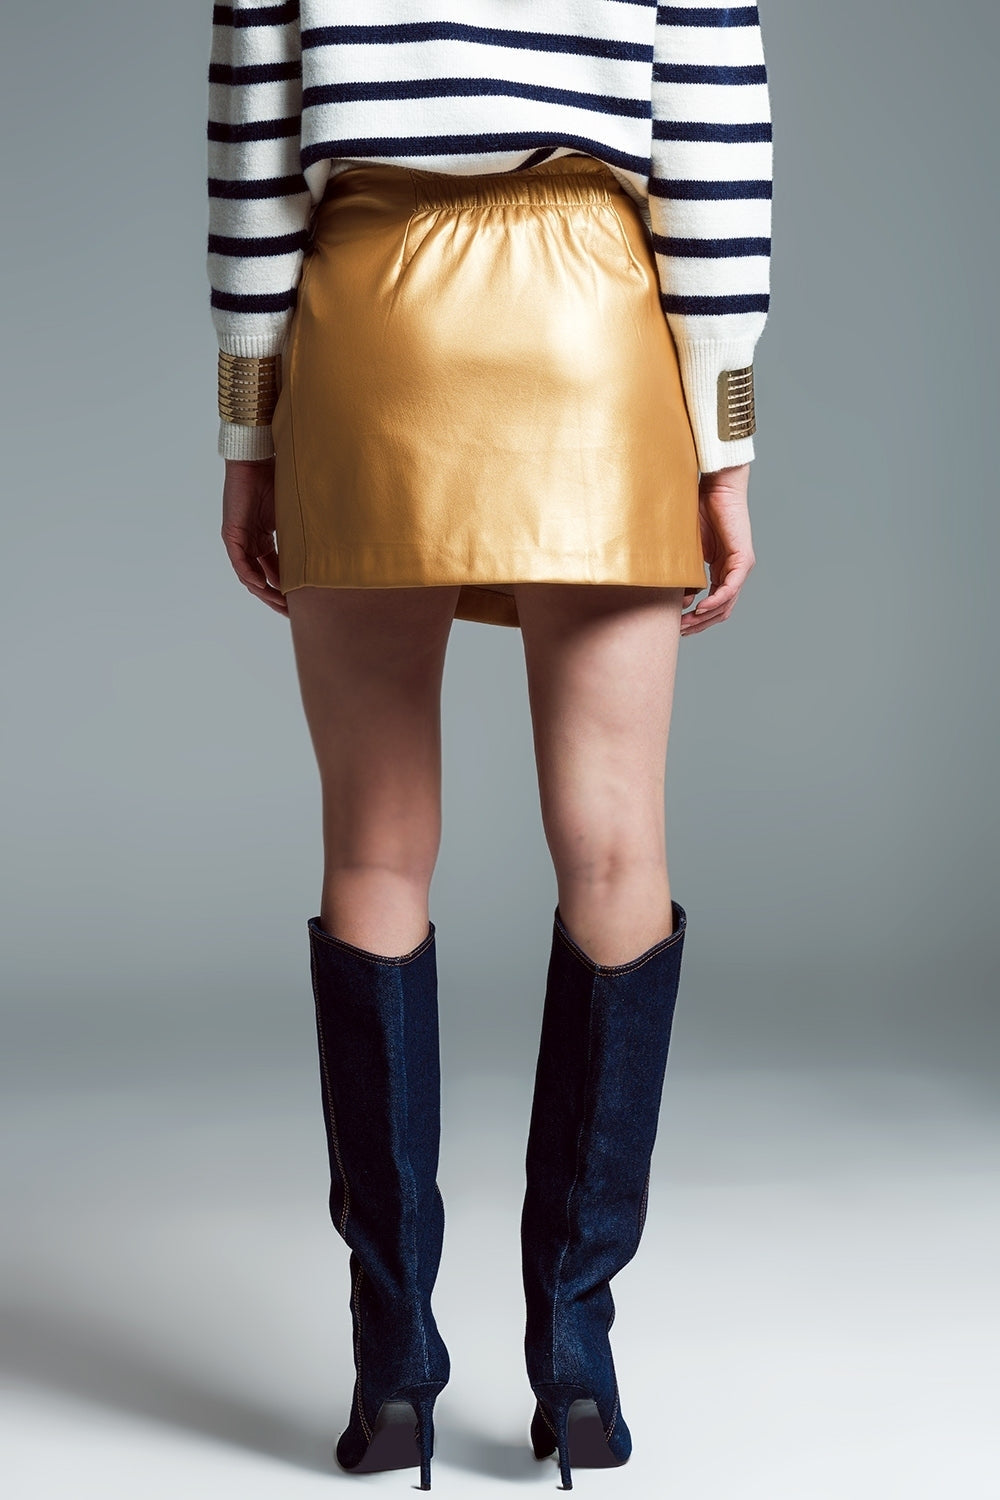 Μίνι φούστα από ψεύτικο δέρμα με φιόγκο στο πλάι σε χρυσό χρώμα